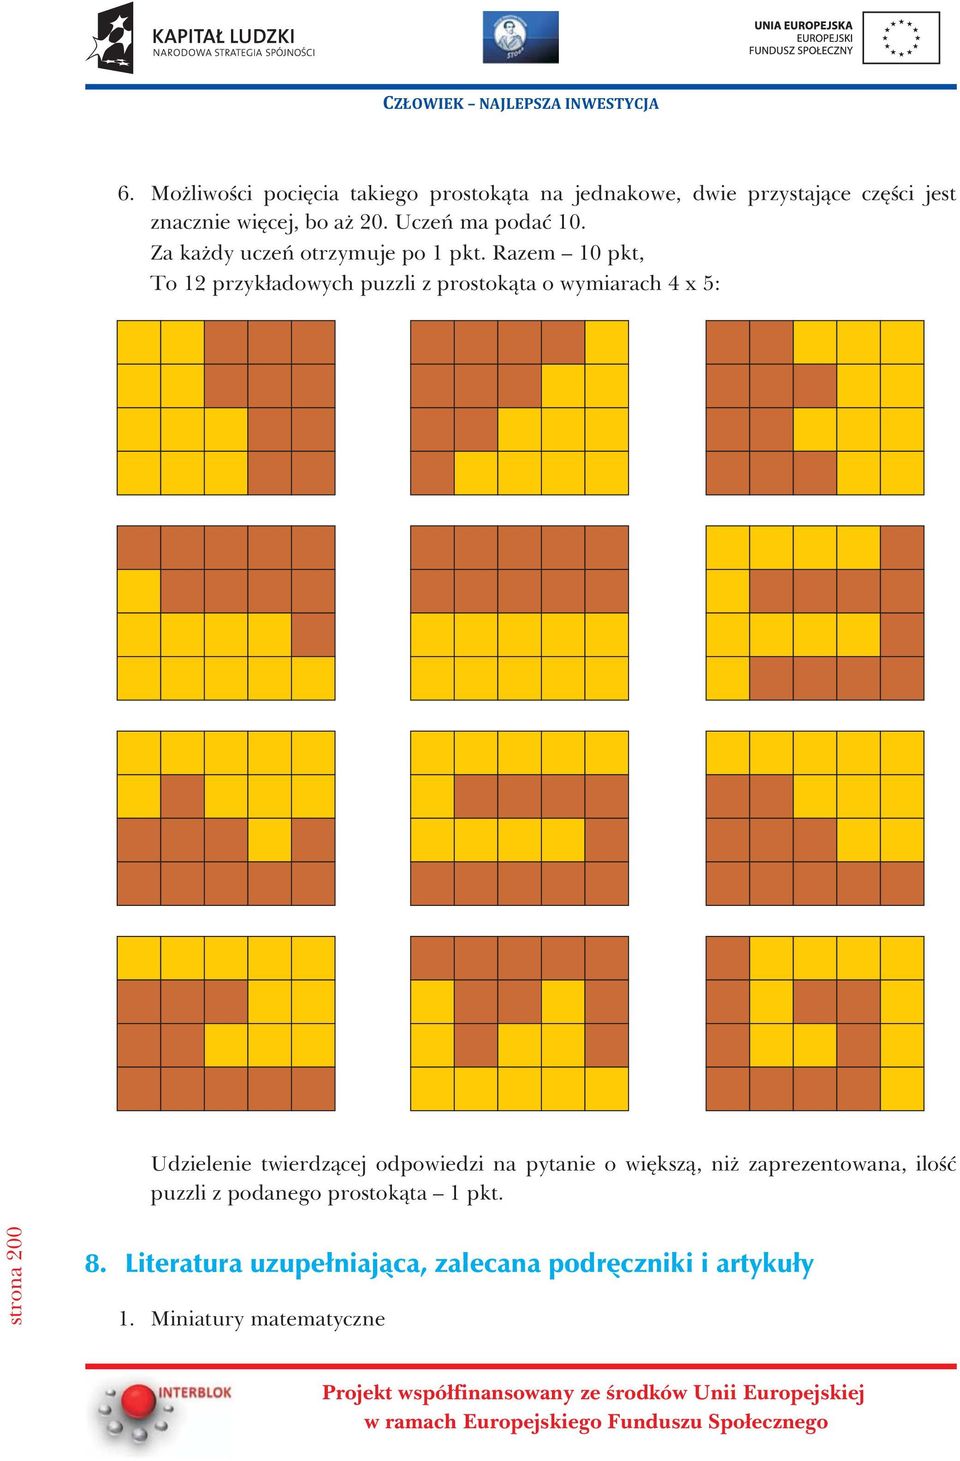 Razem 0 pkt, To 2 przyk³adowych puzzli z prostok¹ta o wymiarach 4x5: Udzielenie twierdz¹cej odpowiedzi na